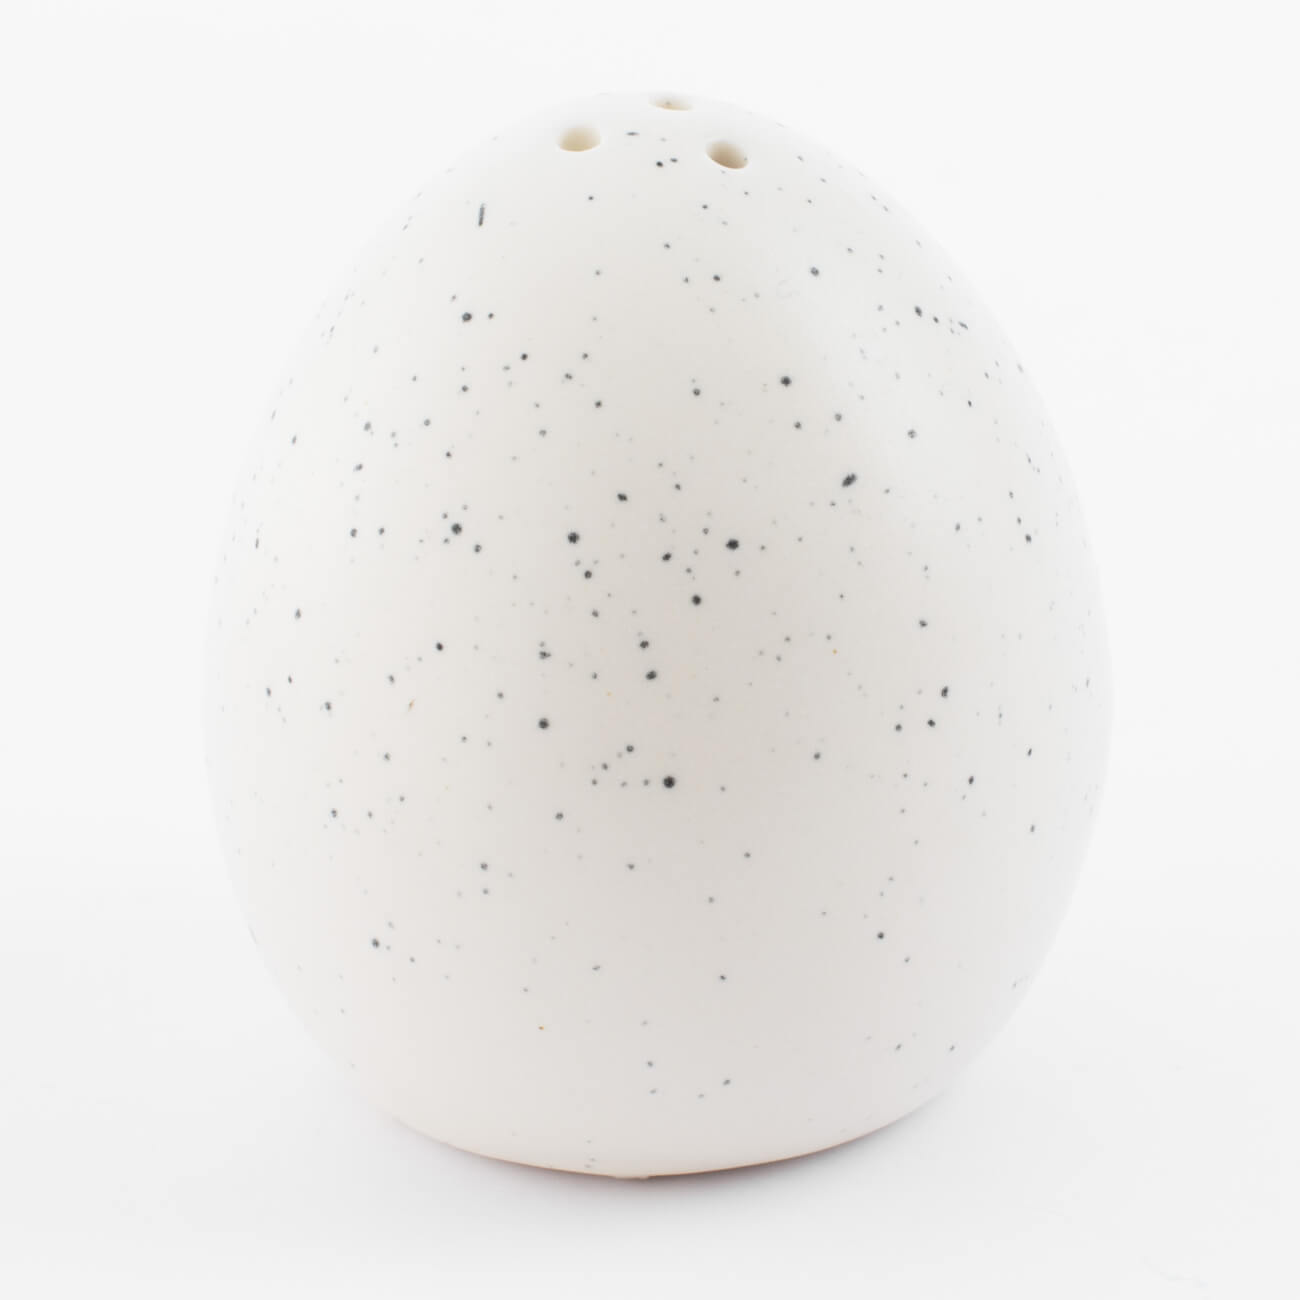 Емкость для соли или перца, 6 см, фарфор P, молочная, в крапинку, Яйцо, Natural Easter подставка для яйца 15х10 см 6 отд фарфор p молочная в крапинку natural easter